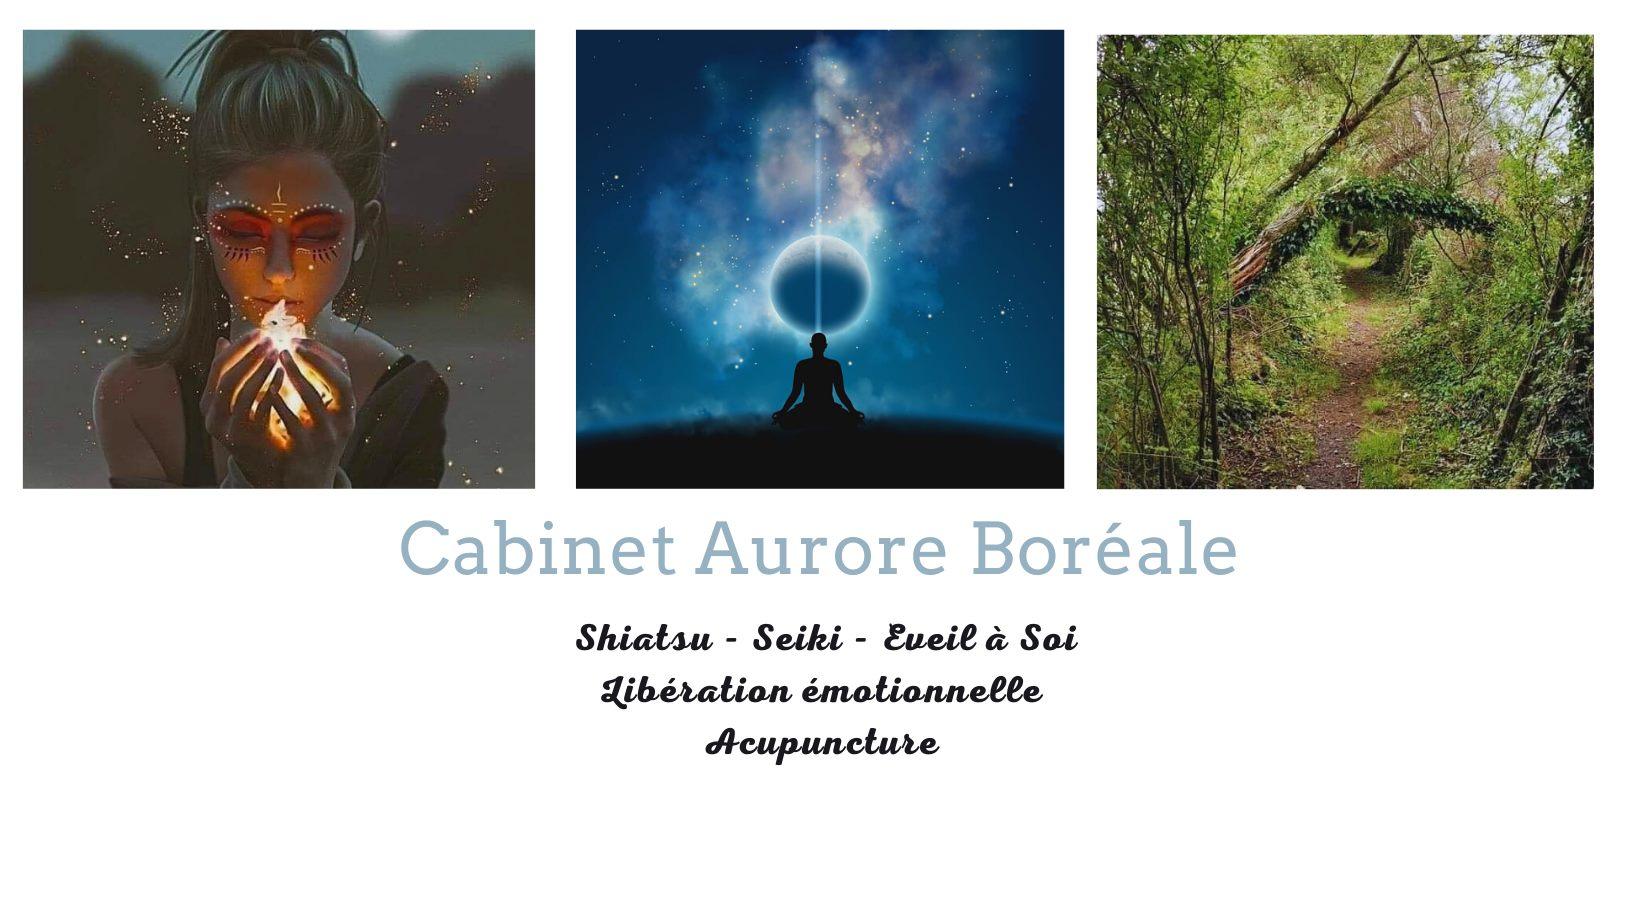 Cabinet Aurore Boréale